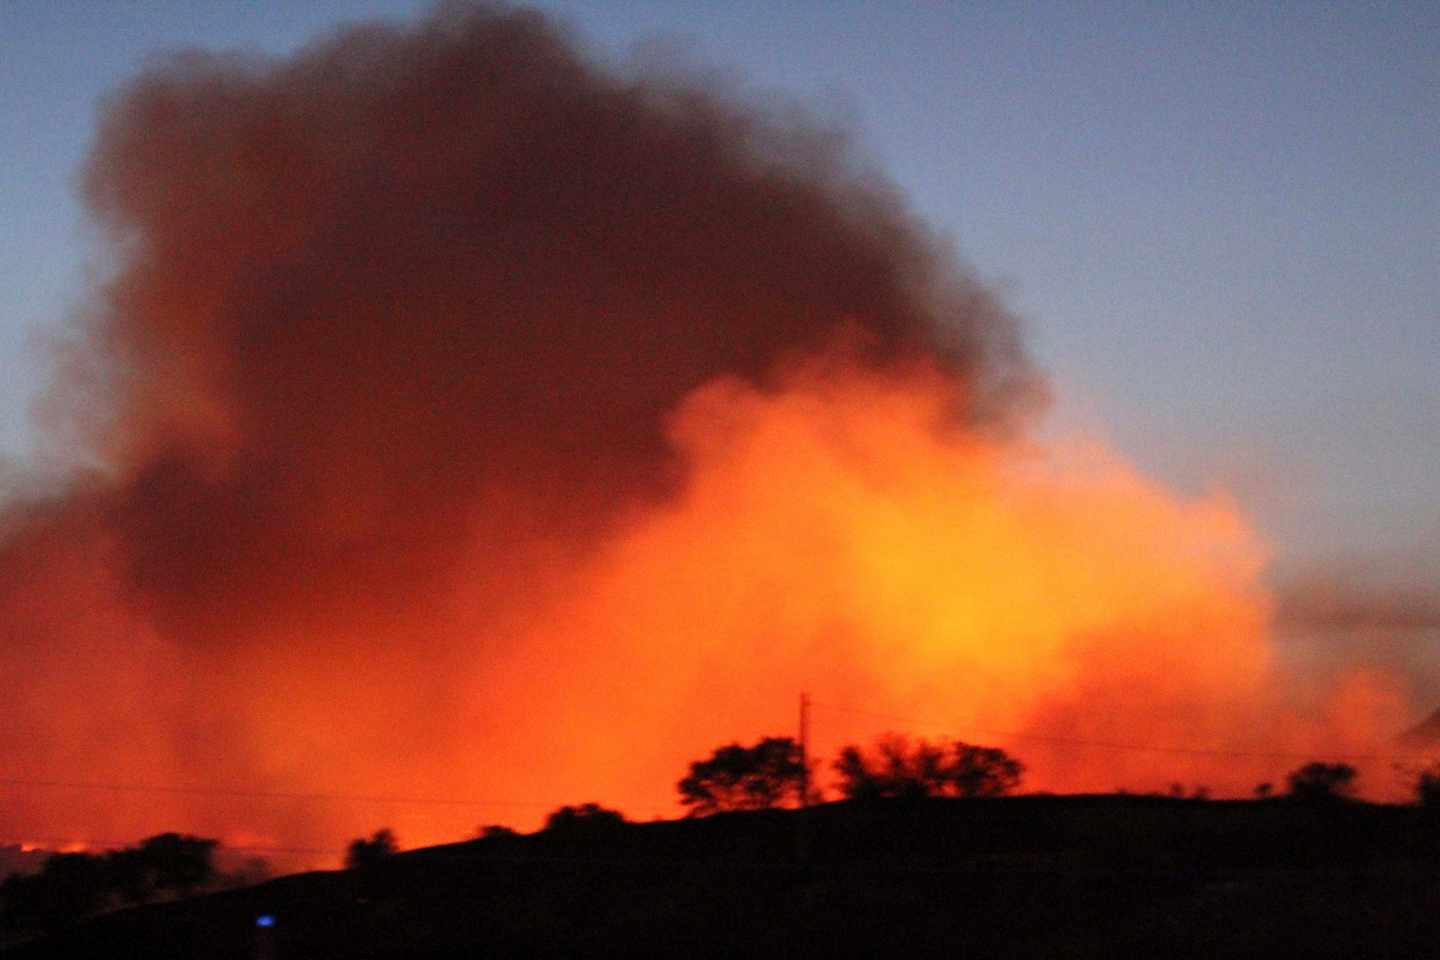 Vista de las llamas producidas por incendio forestal que se ha declarado en Almorox (Toledo)